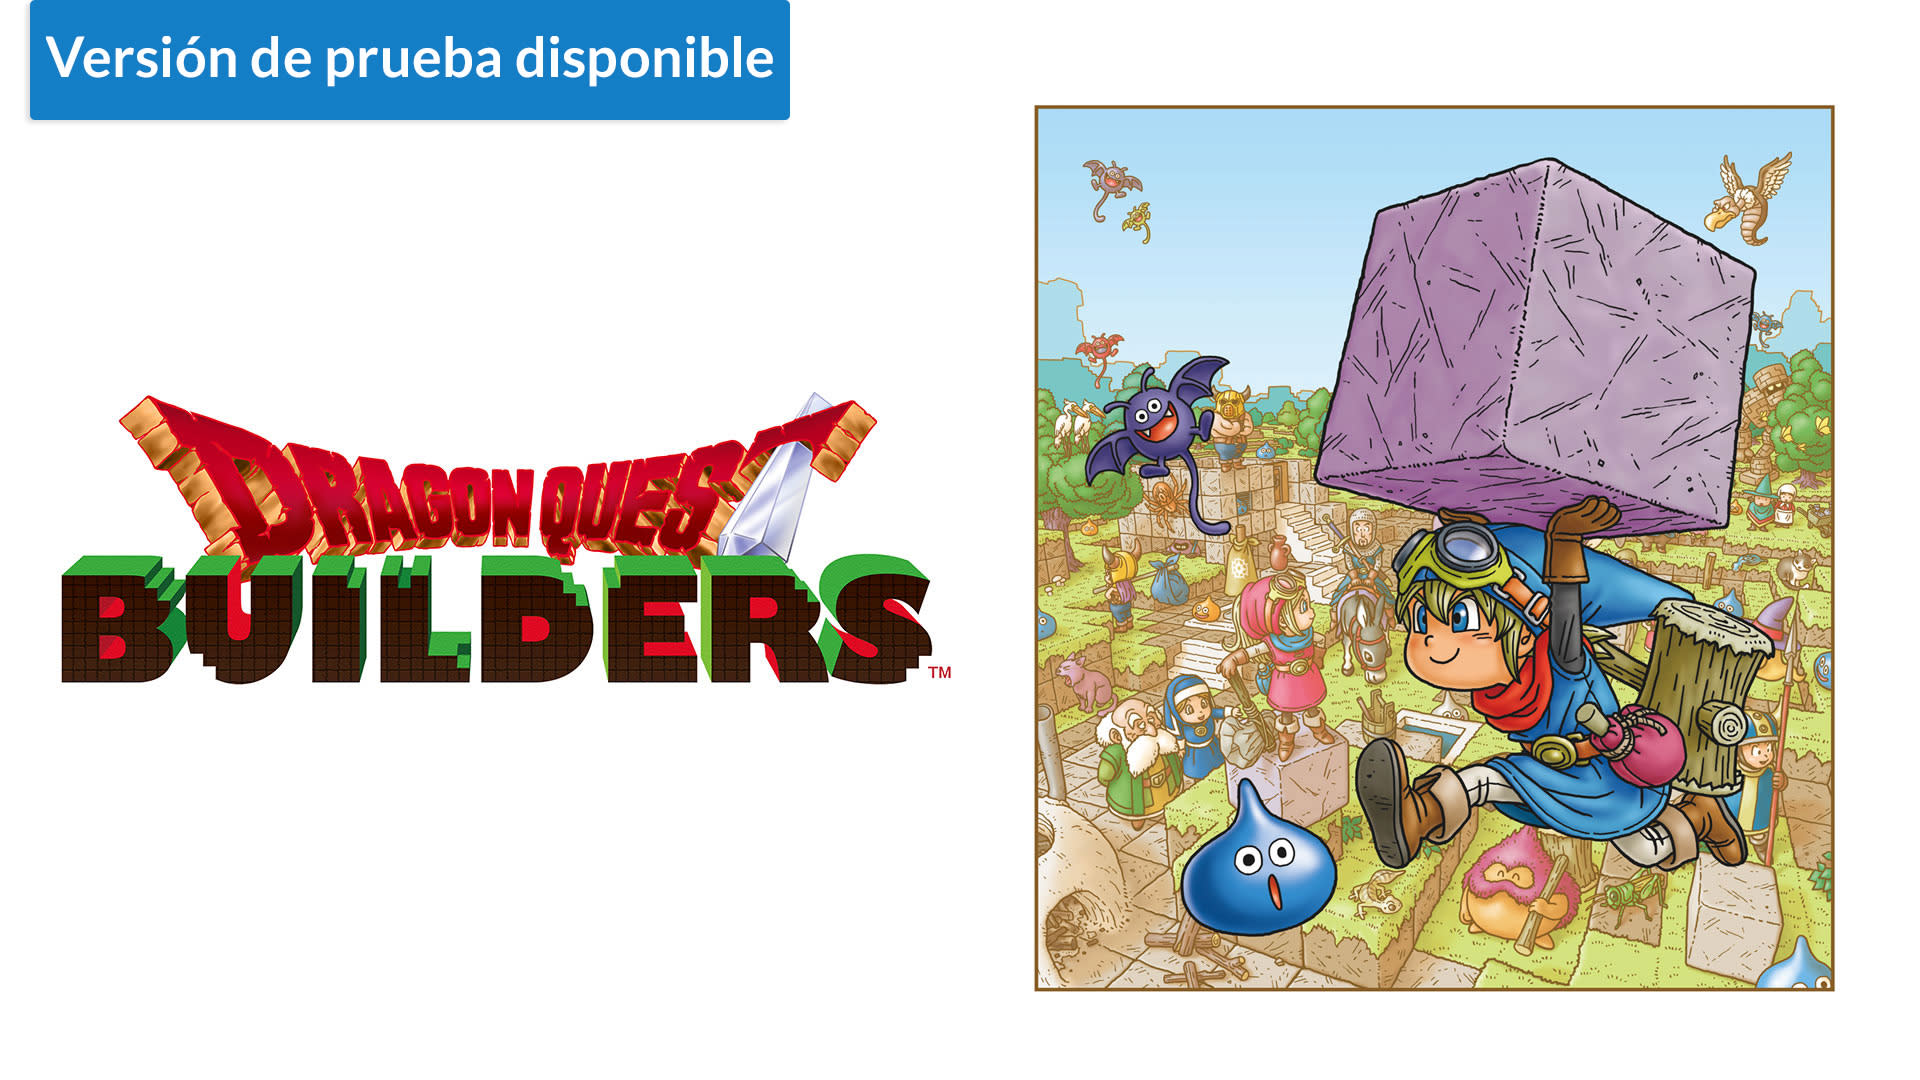 Dragon Quest Builders™